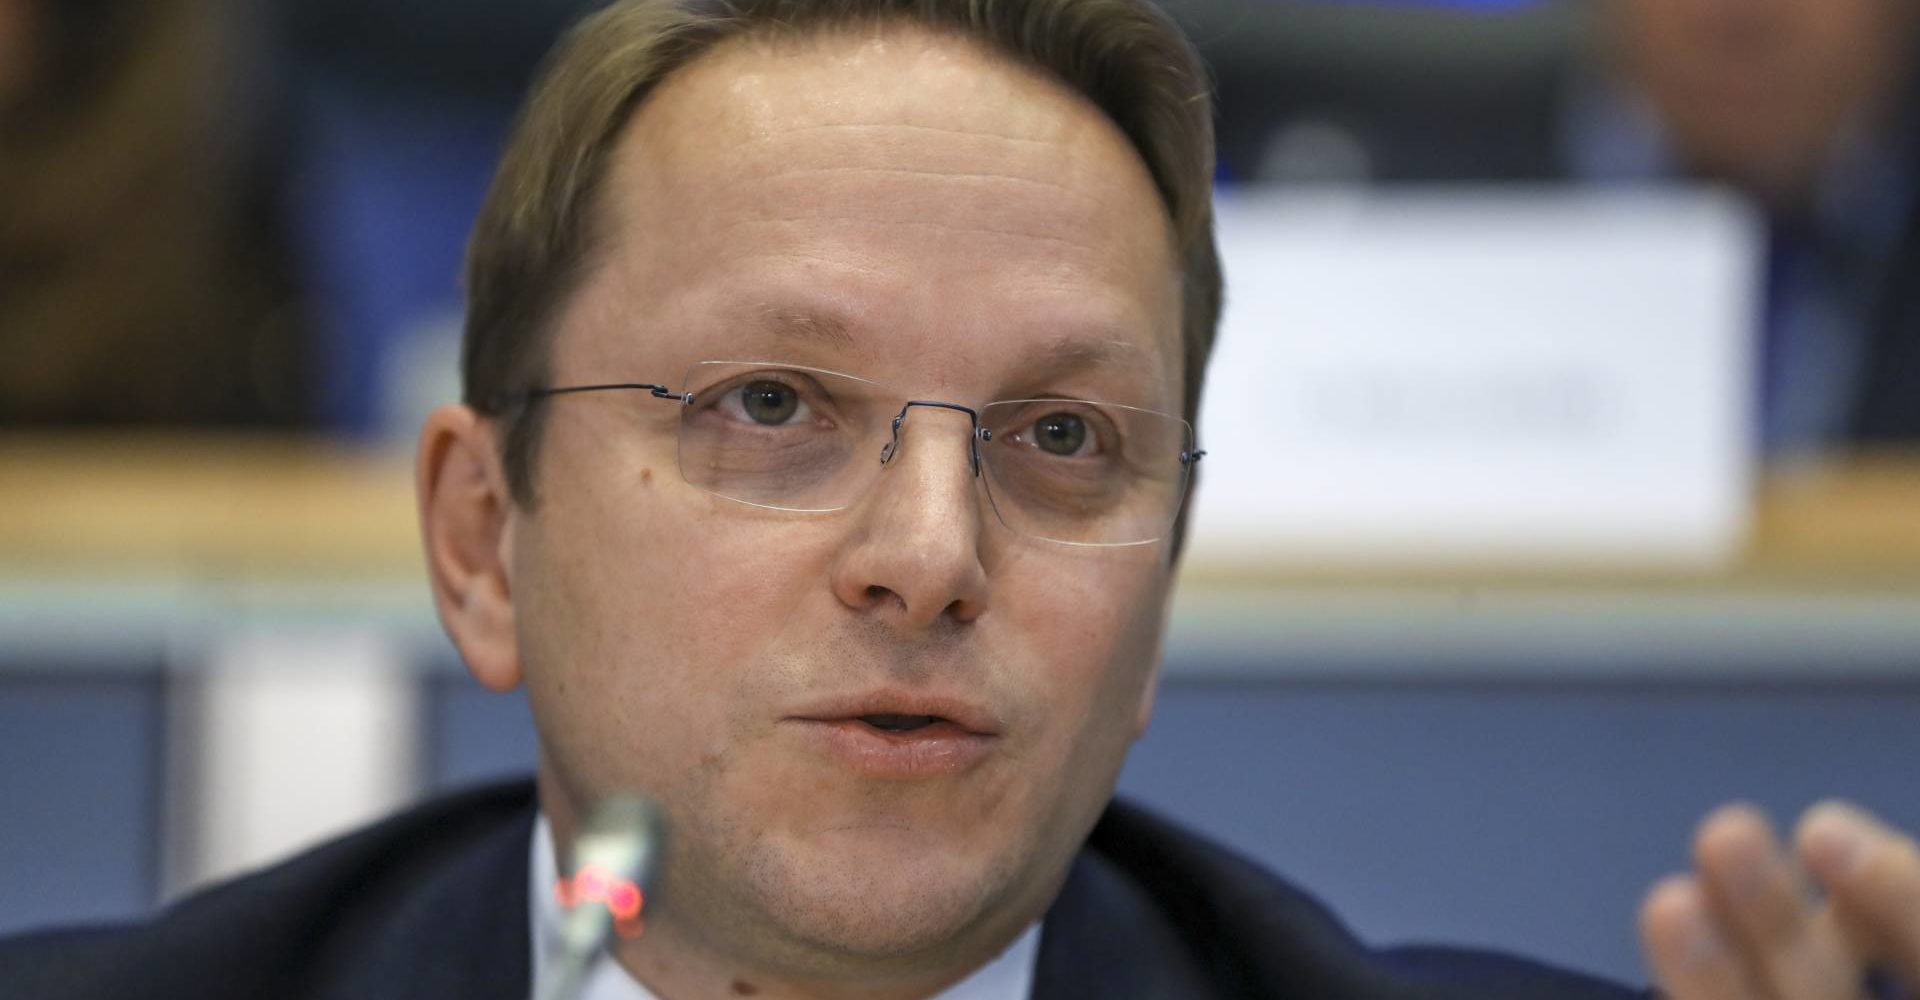 Stalni veleposlanik Mađarske u EU-u Oliver Varhelyi &#39;zamjenski kandidat&#39; za povjerenika Komisije - Grabancijaš